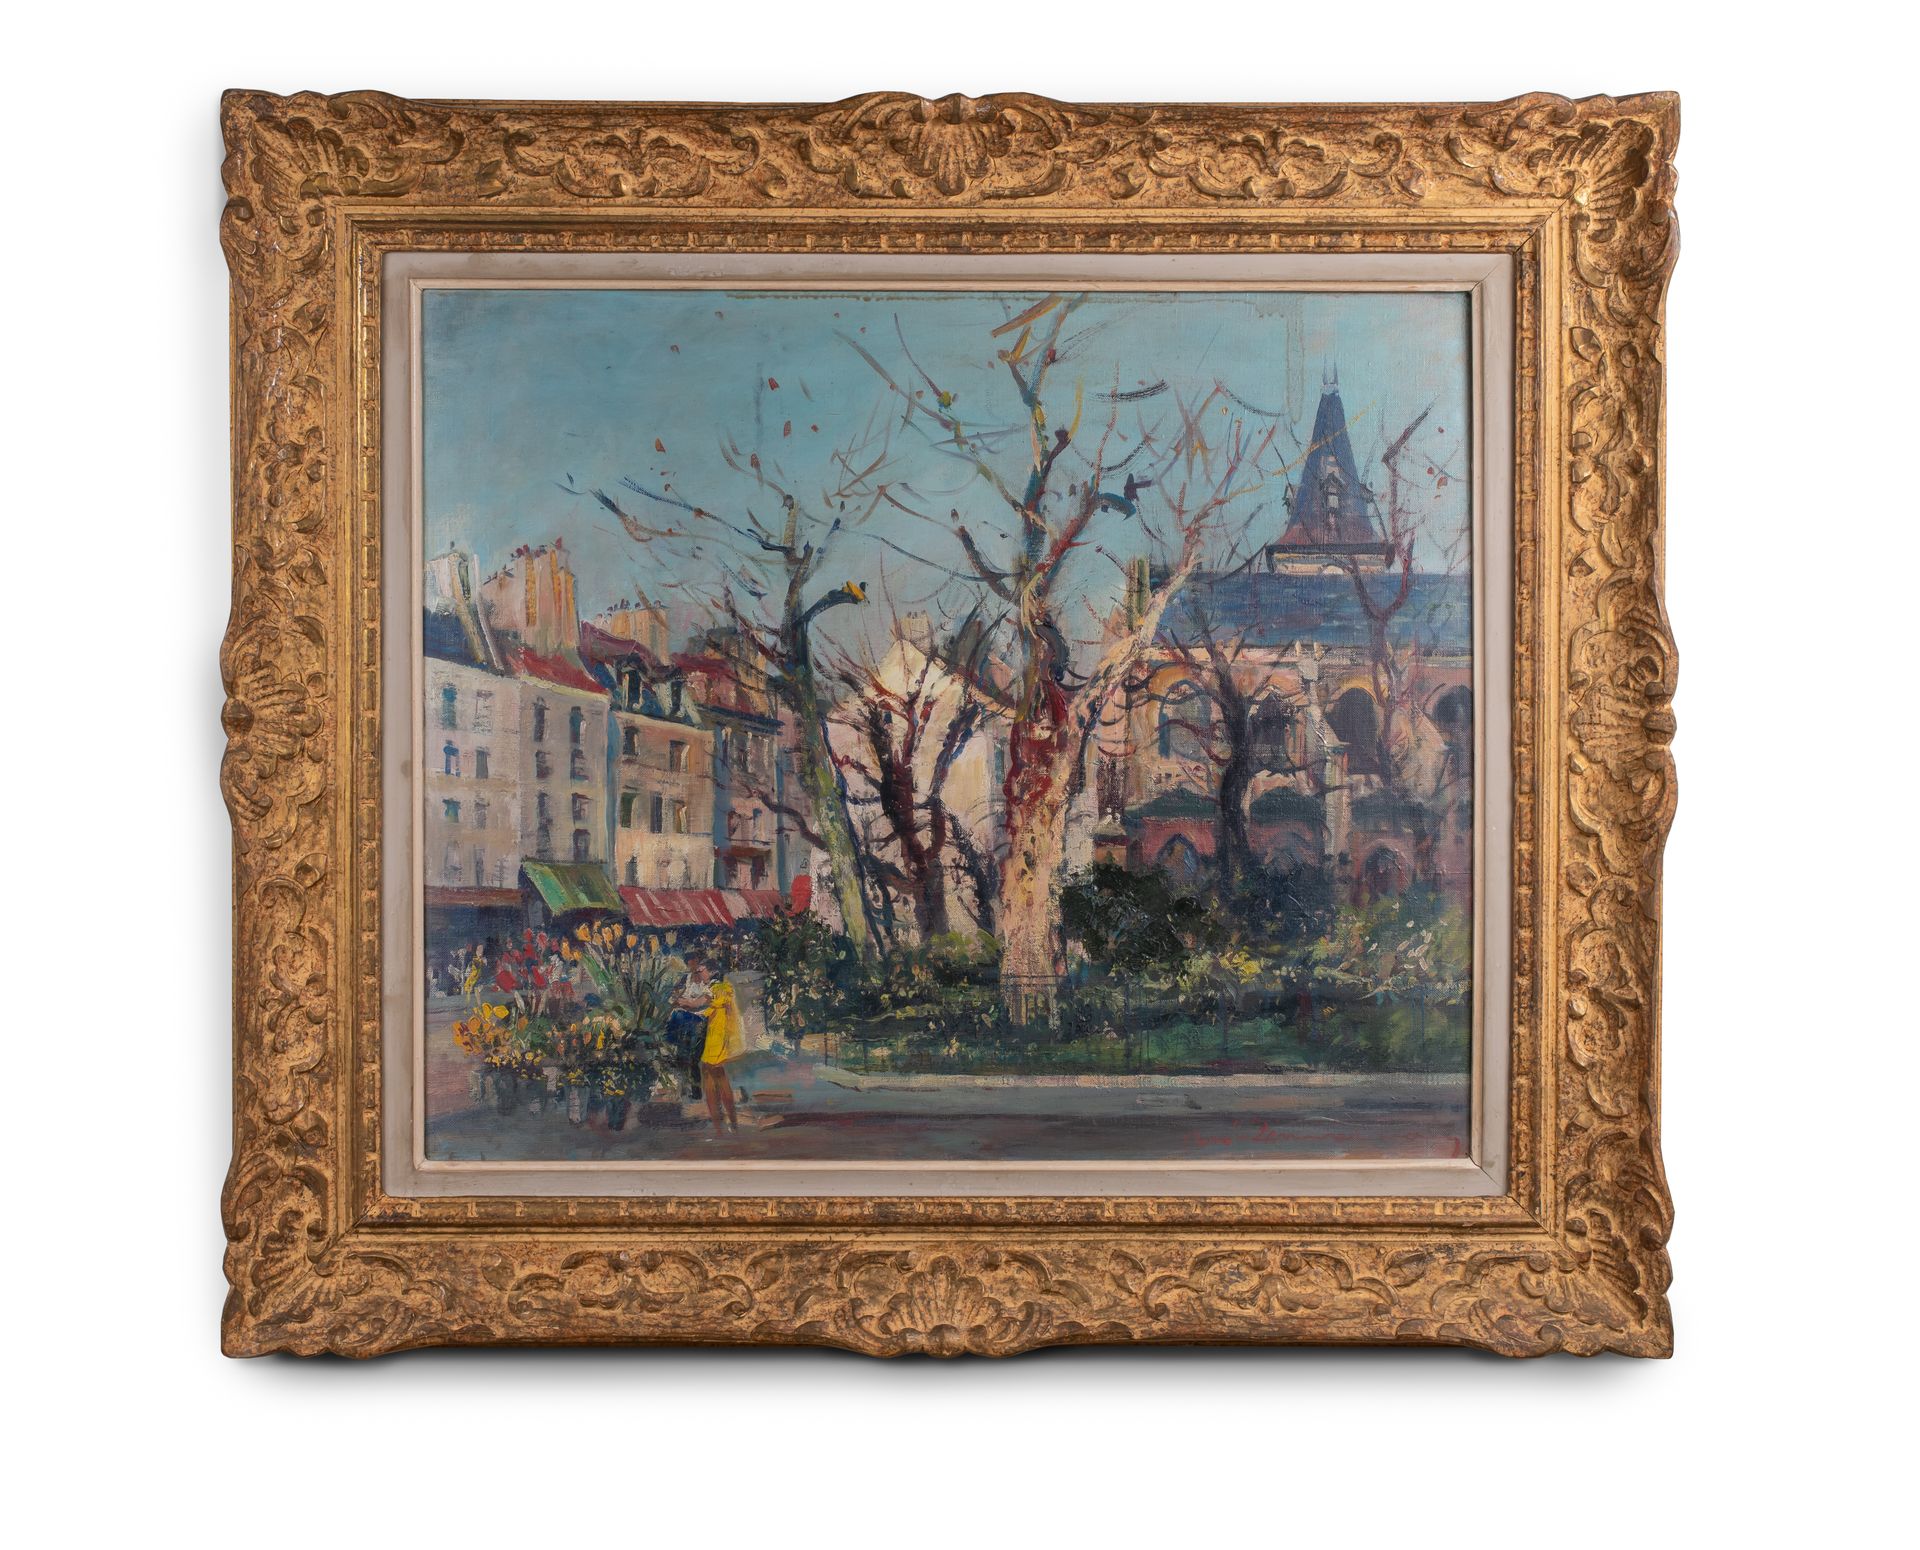 Null 勒内-齐默尔曼(1860-1945)

巴黎人广场和花店

布面油画，右下角有签名

53 x 63.5 cm 正在观看